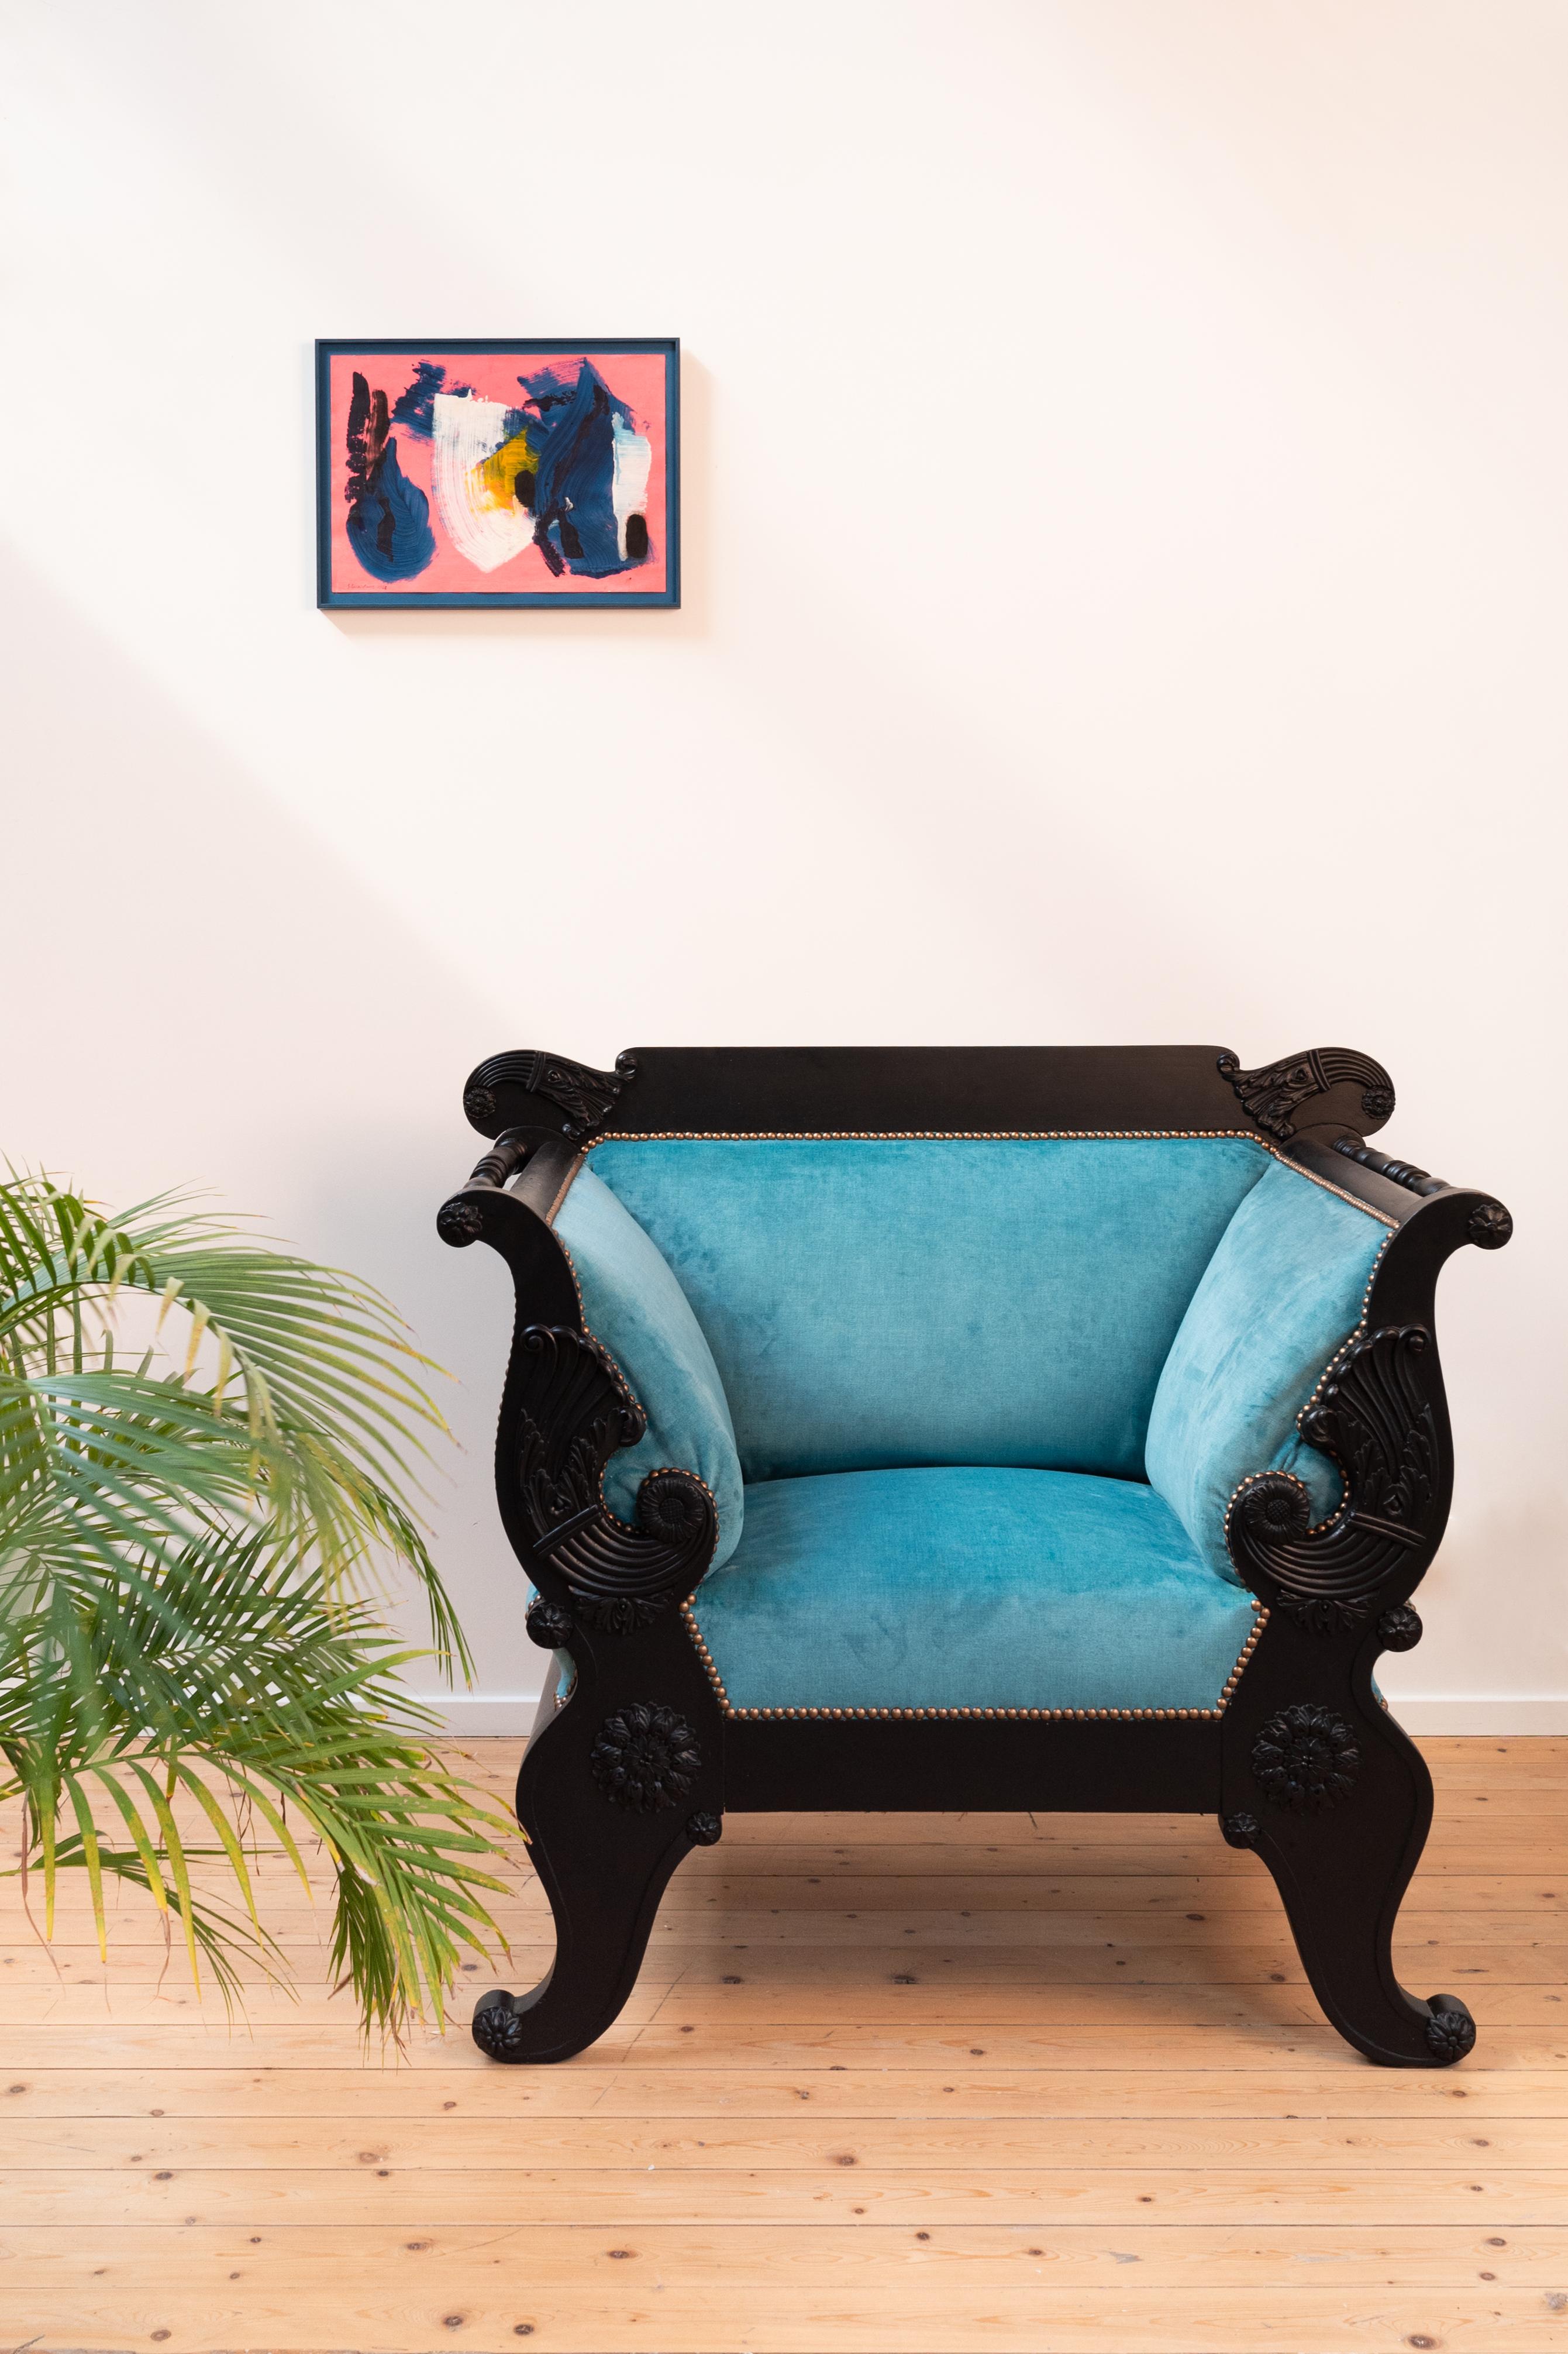 Originaler massiver Biedermeierstuhl, der schwarz lackiert und mit einem neuen blauen Veloursbezug versehen wurde, um ihm ein modernes Aussehen zu verleihen. 

Der verwendete Stoff ist ein gestrickter Velours namens Moss 33 (von Keymer).